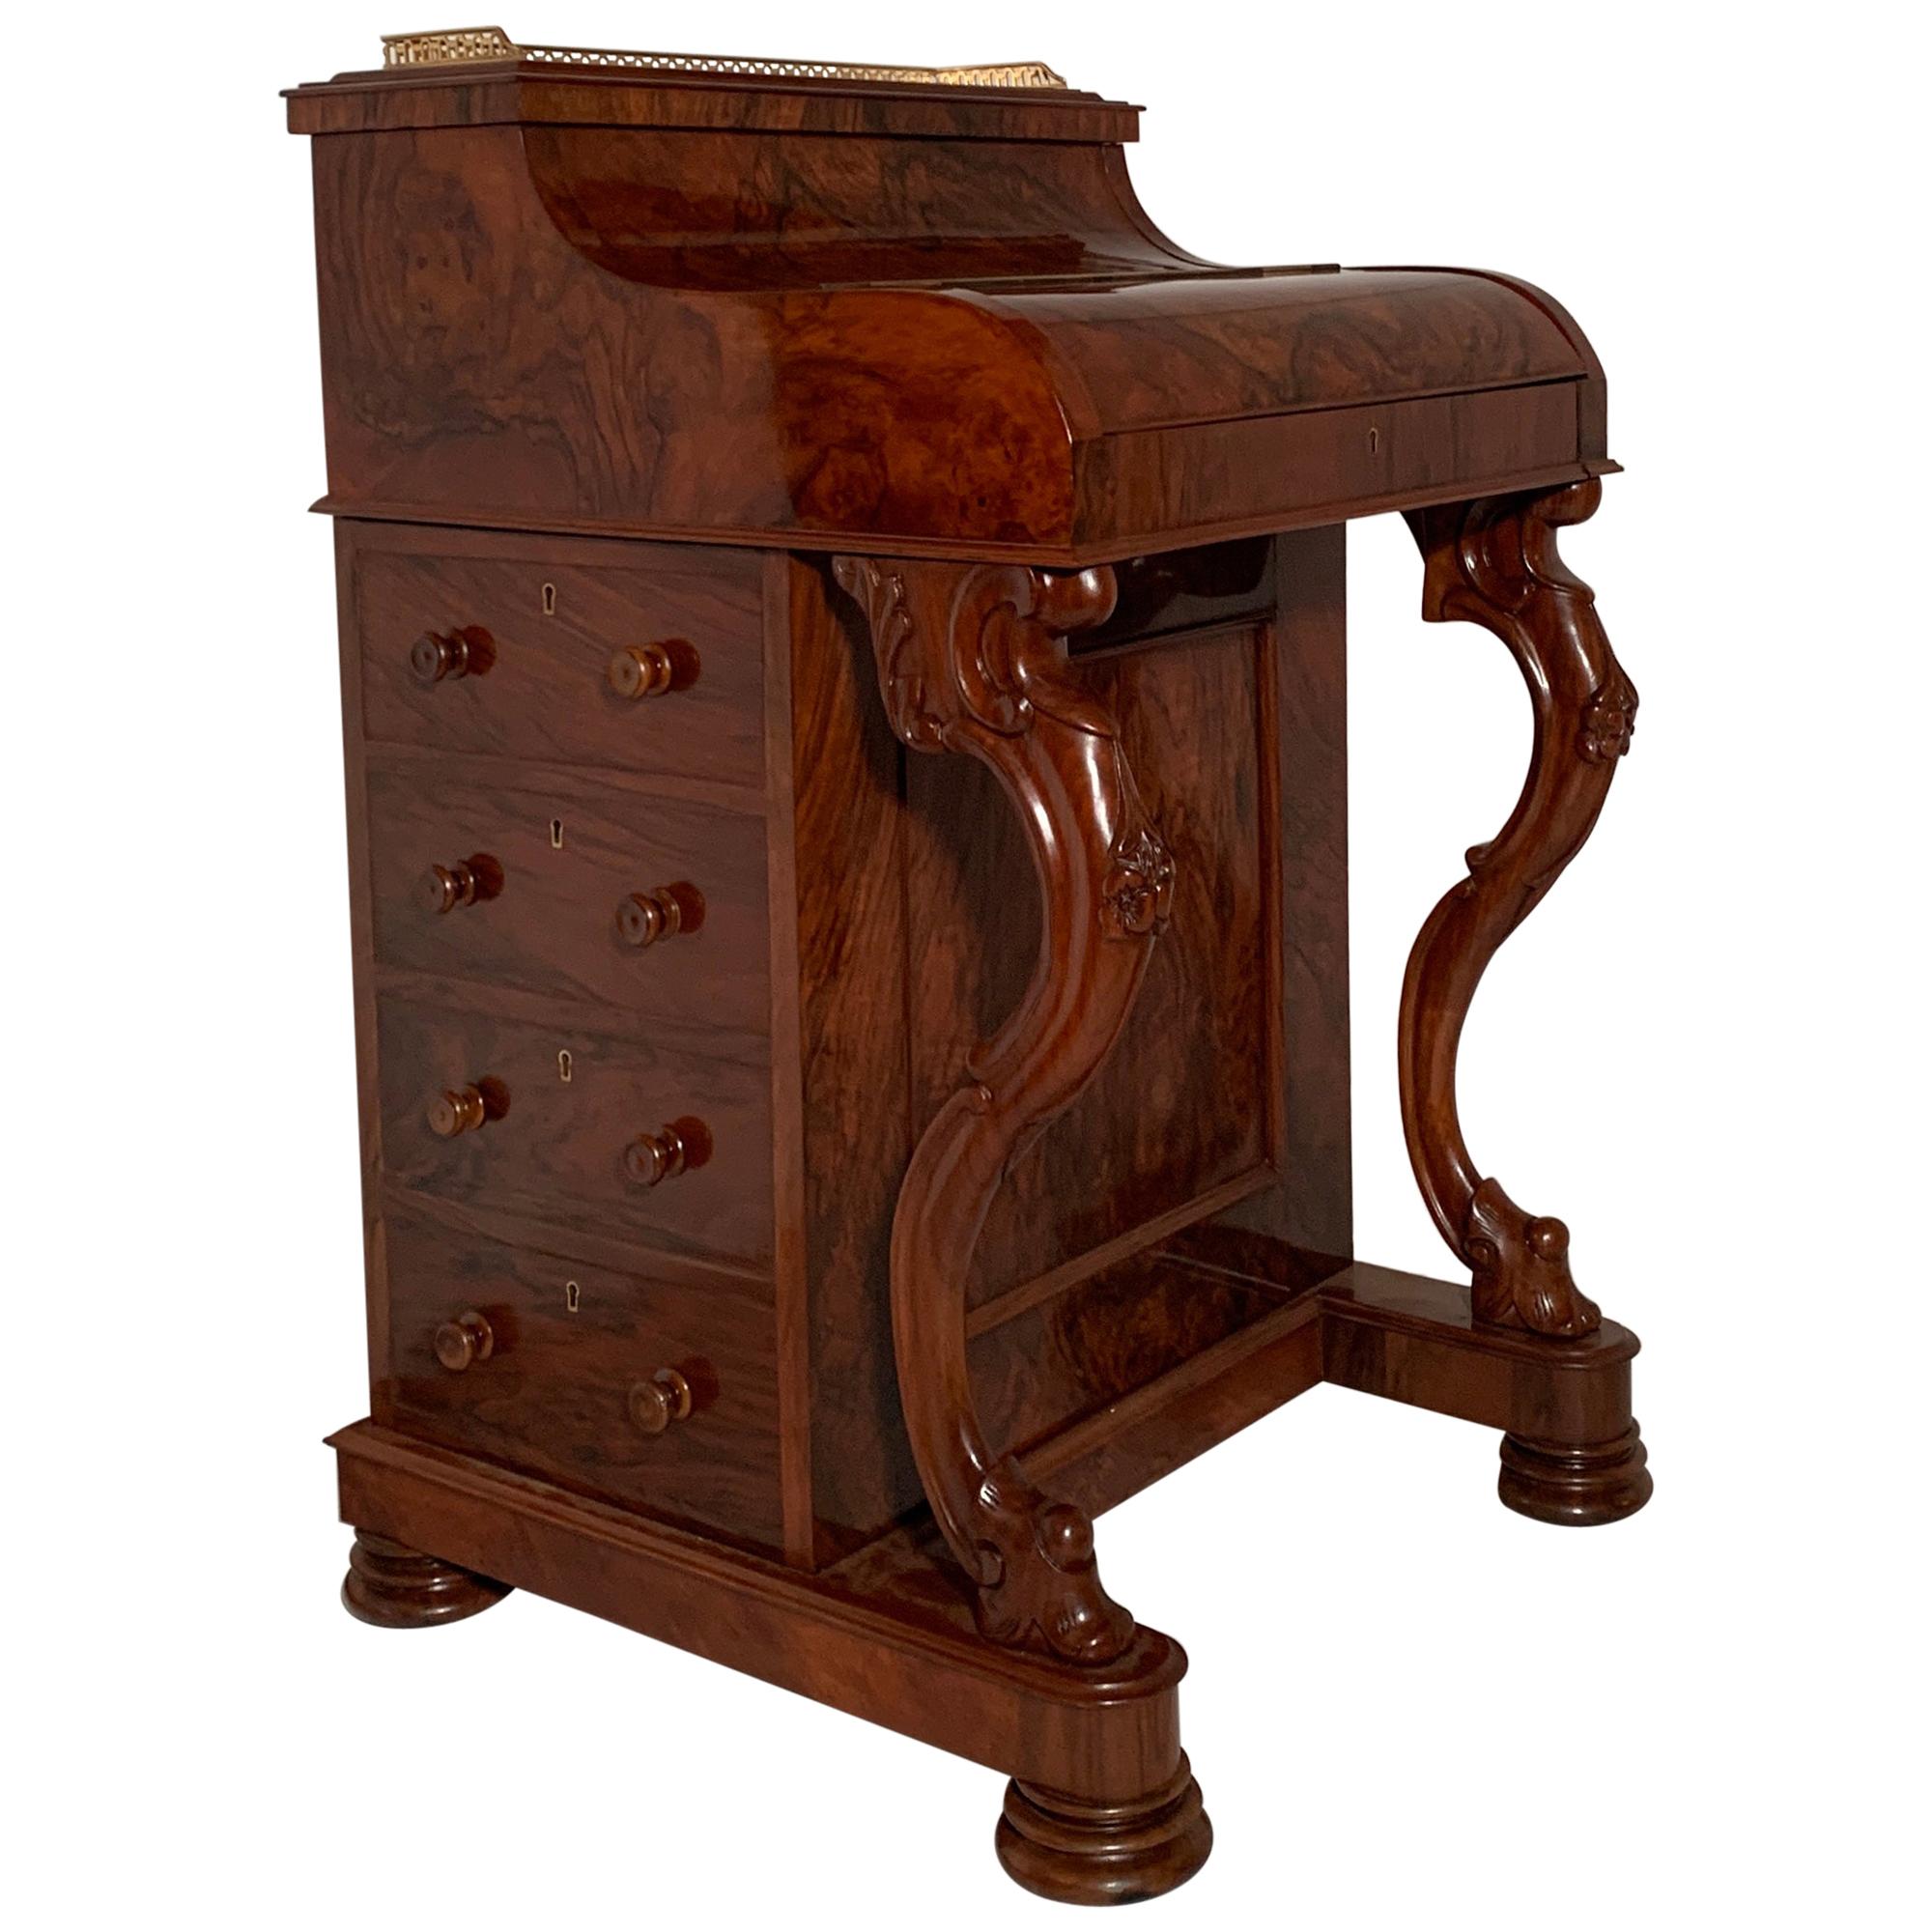 Antique English Burled Walnut Mechanical Davenport Desk, circa 1870